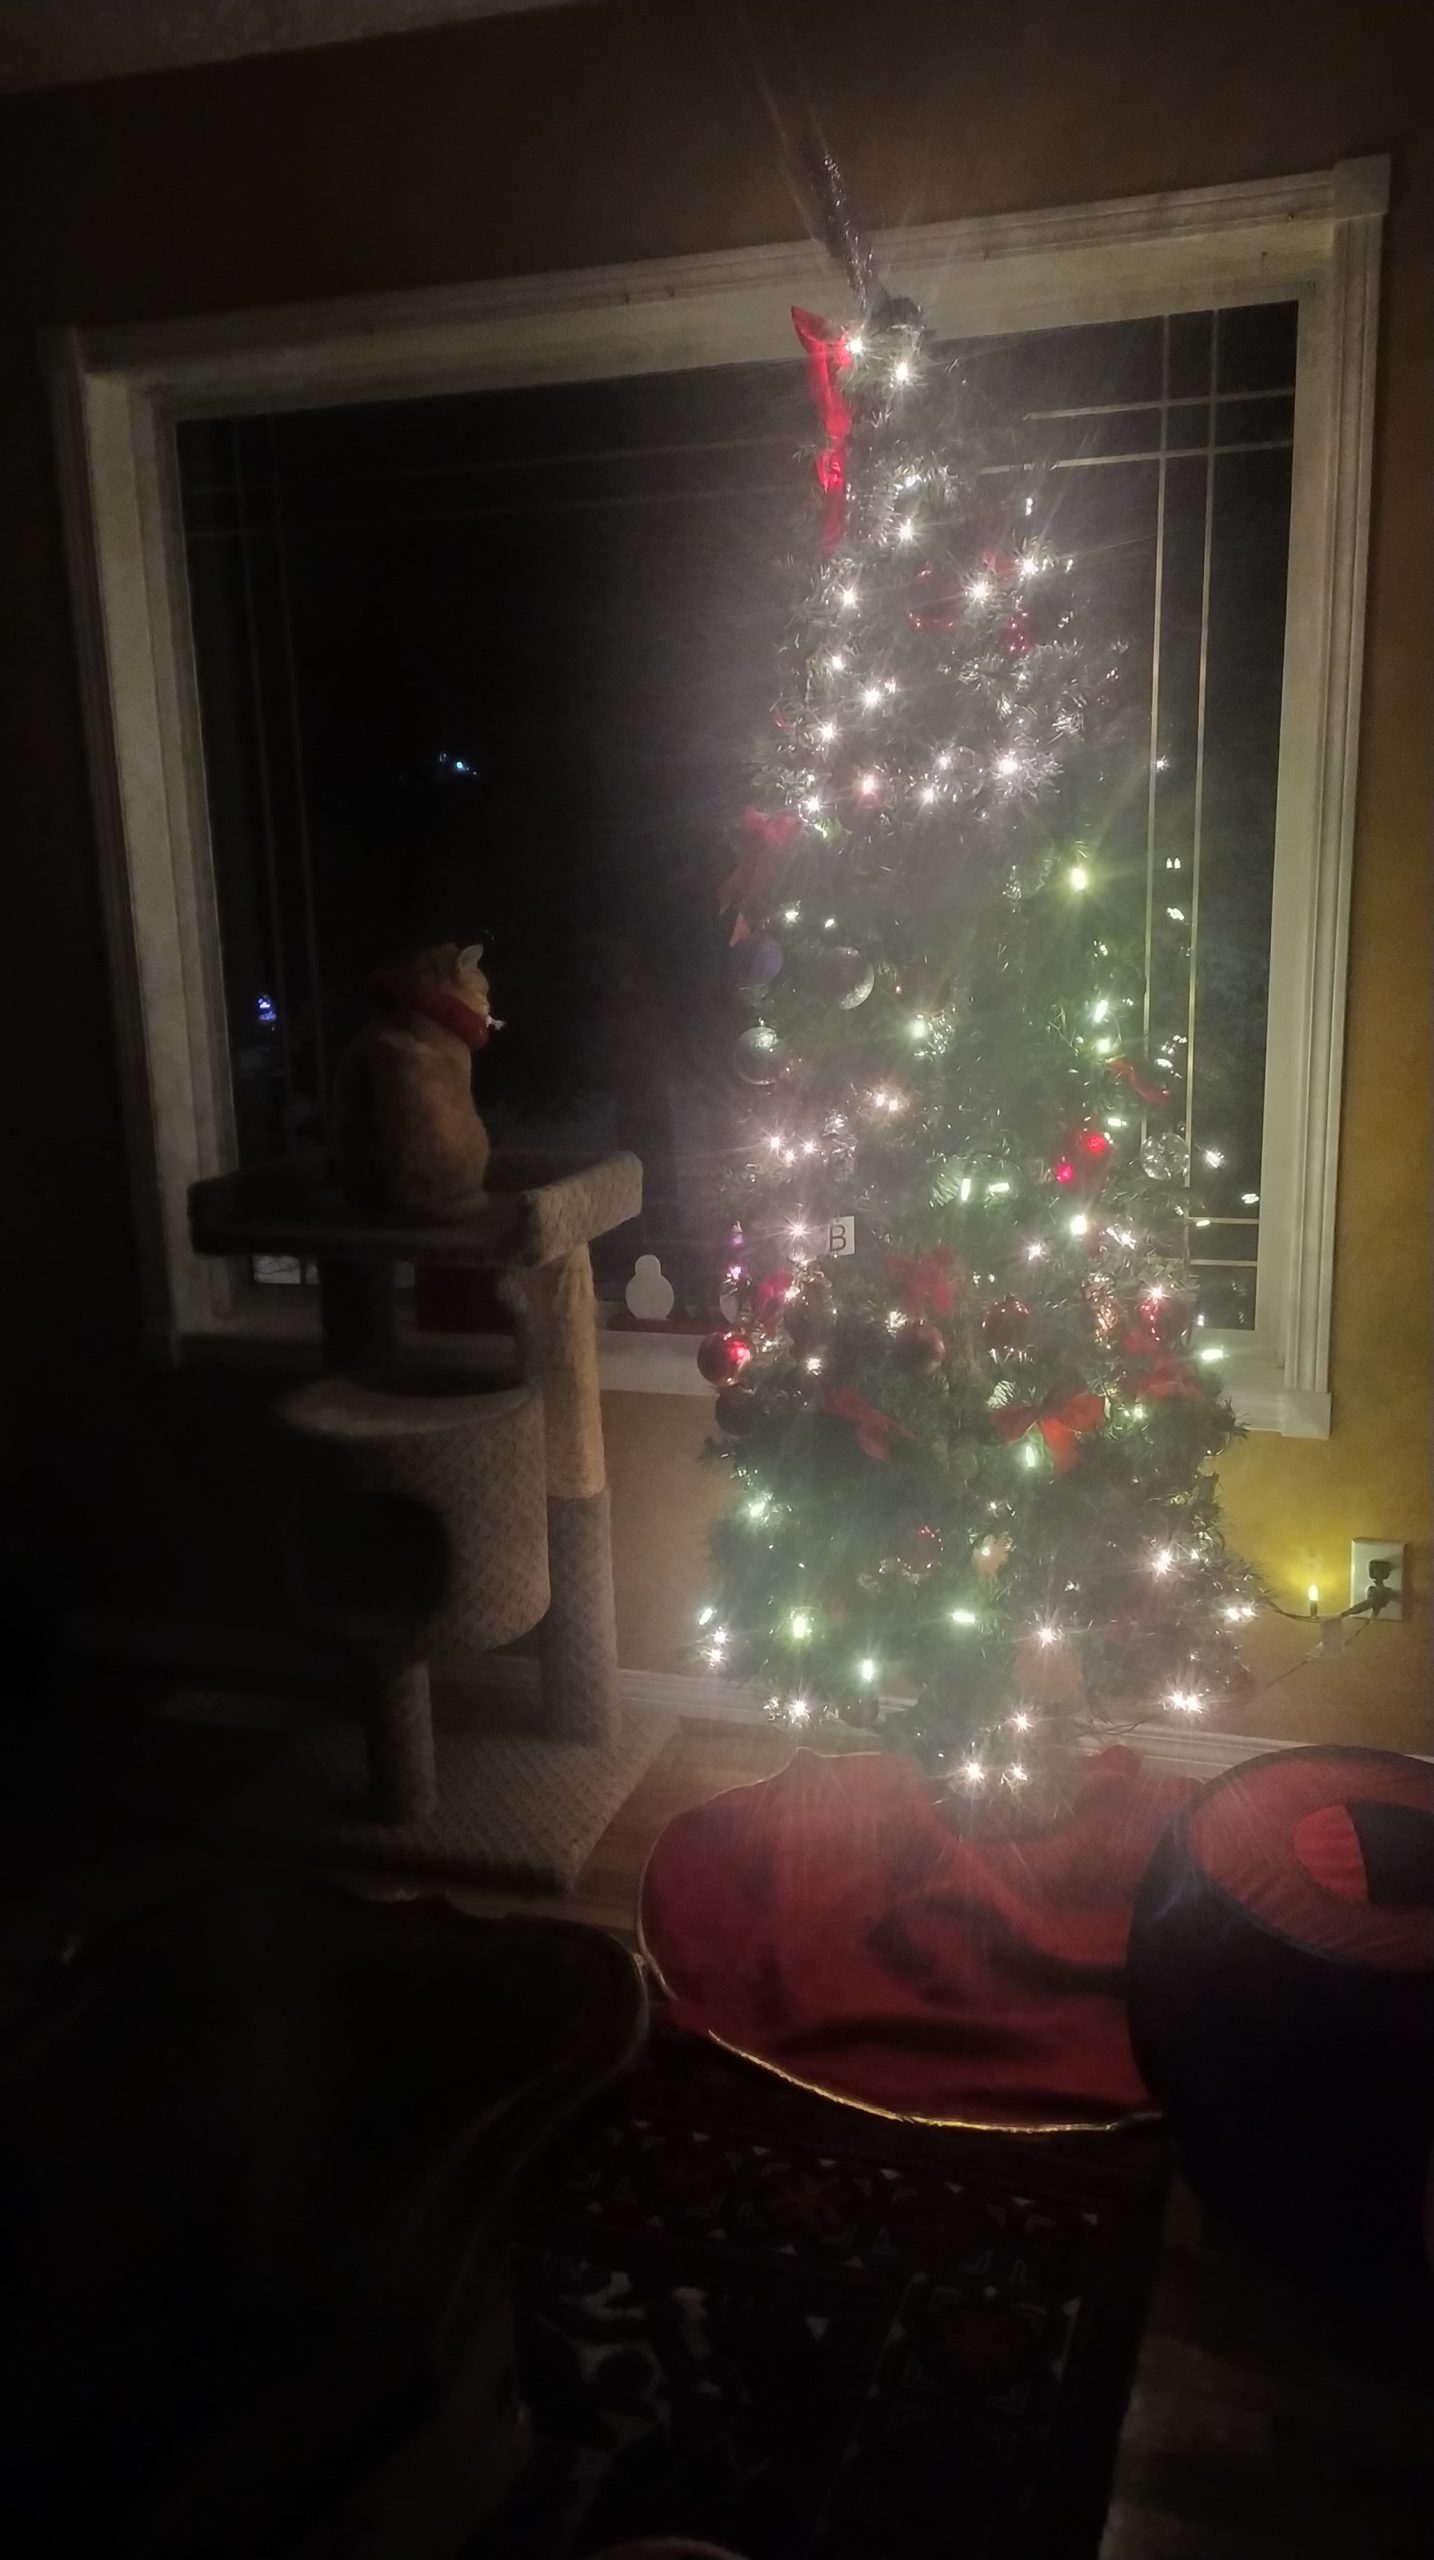 Un chat regarde par la fenêtre. A côté de lui se trouve un sapin de Noël éclairé